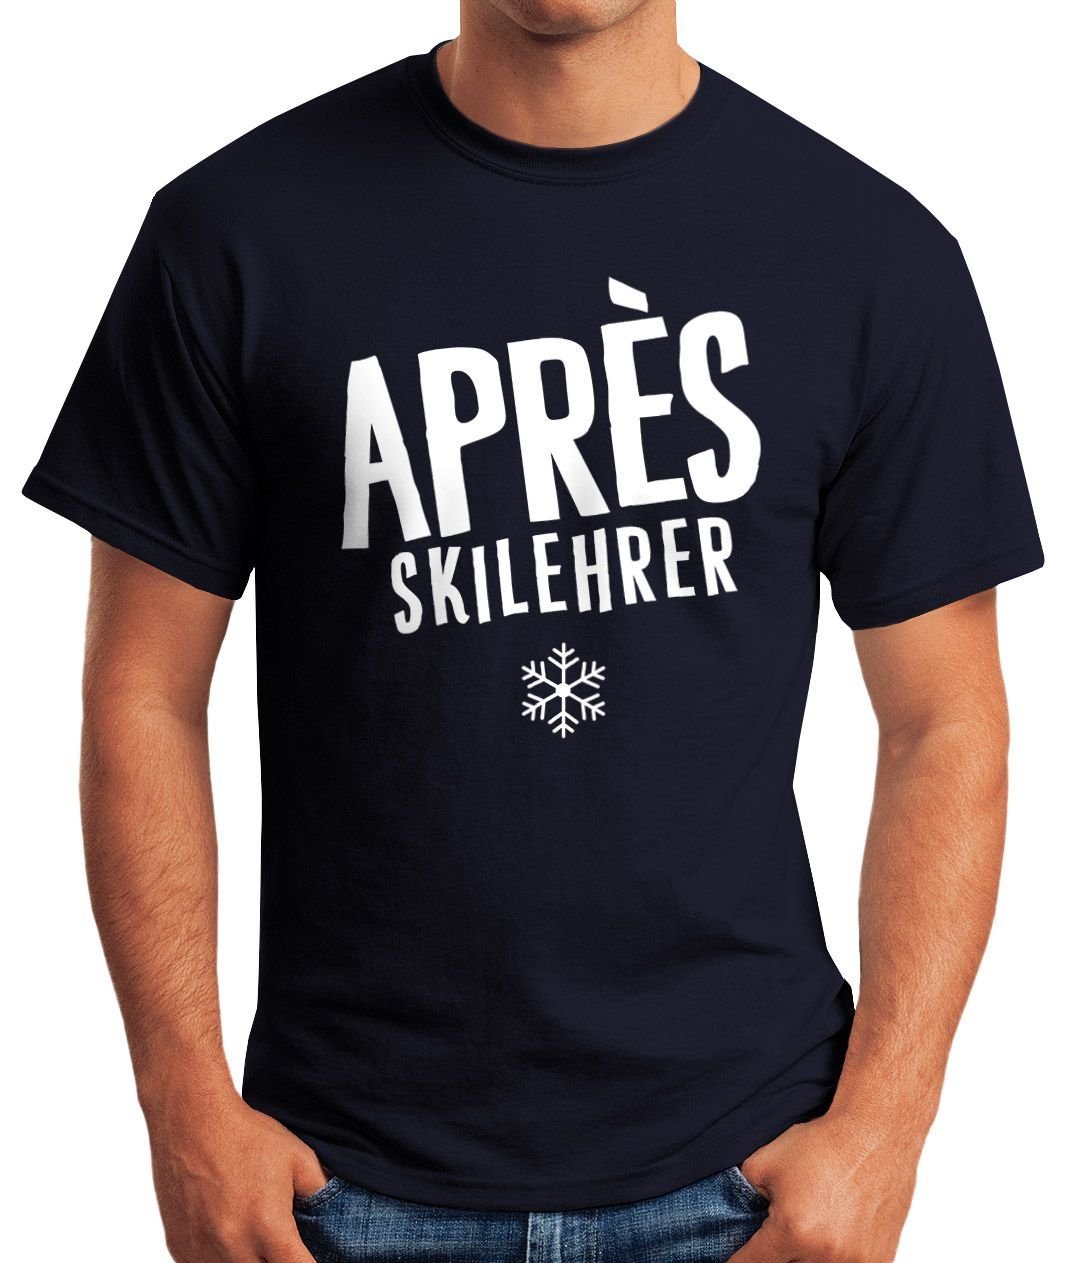 Print Apres-Ski Herren mit Lehrer navy Fun-Shirt T-Shirt Moonworks® MoonWorks Print-Shirt